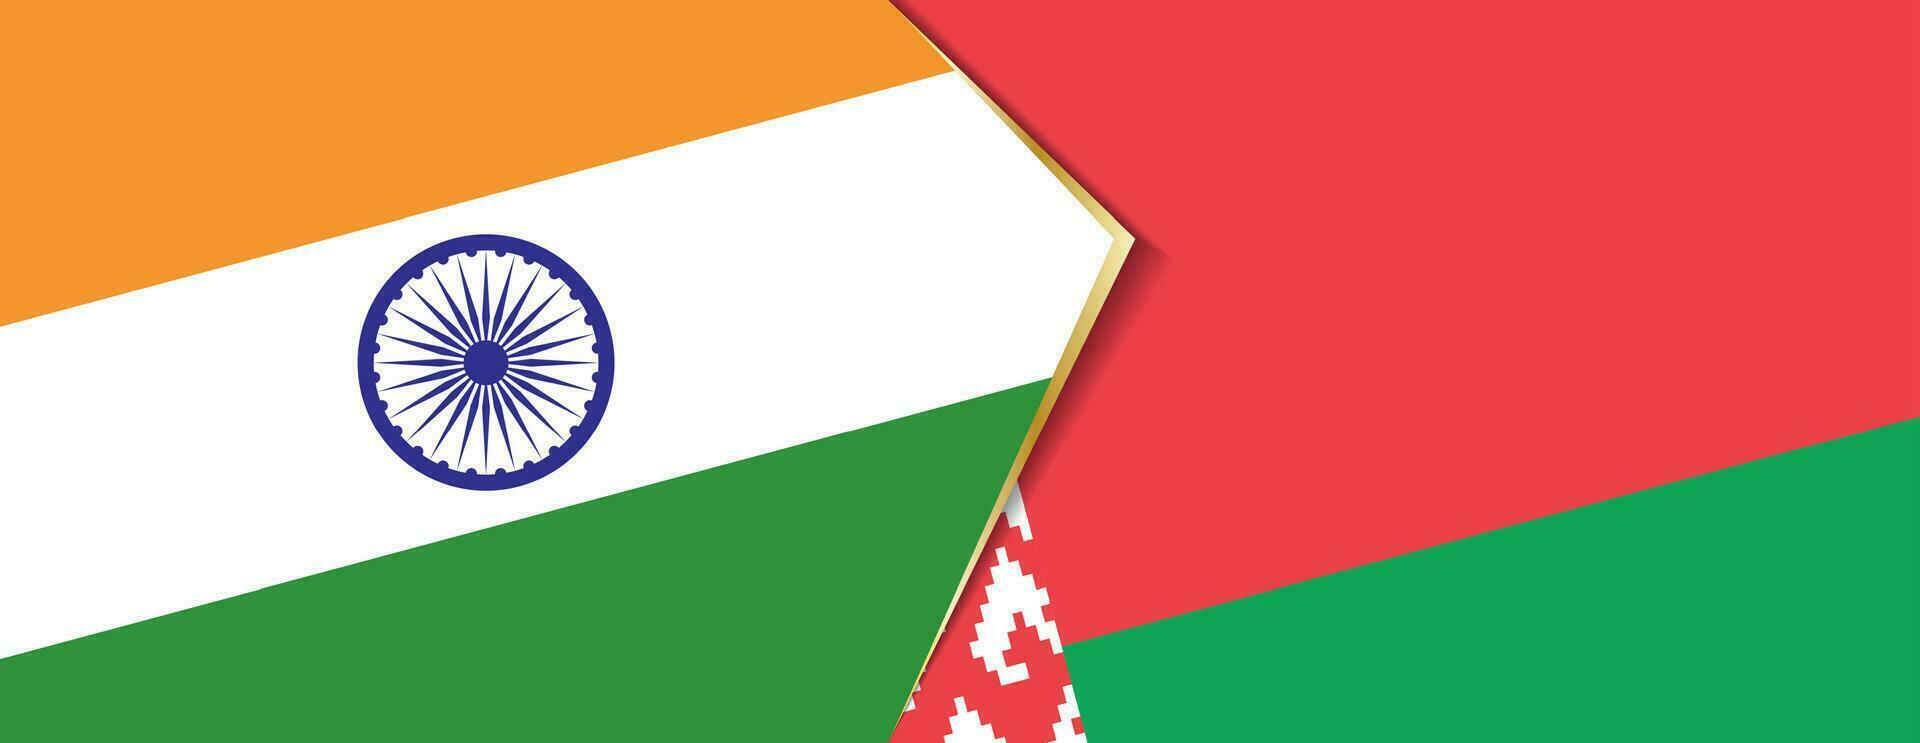 India e bielorussia bandiere, Due vettore bandiere.